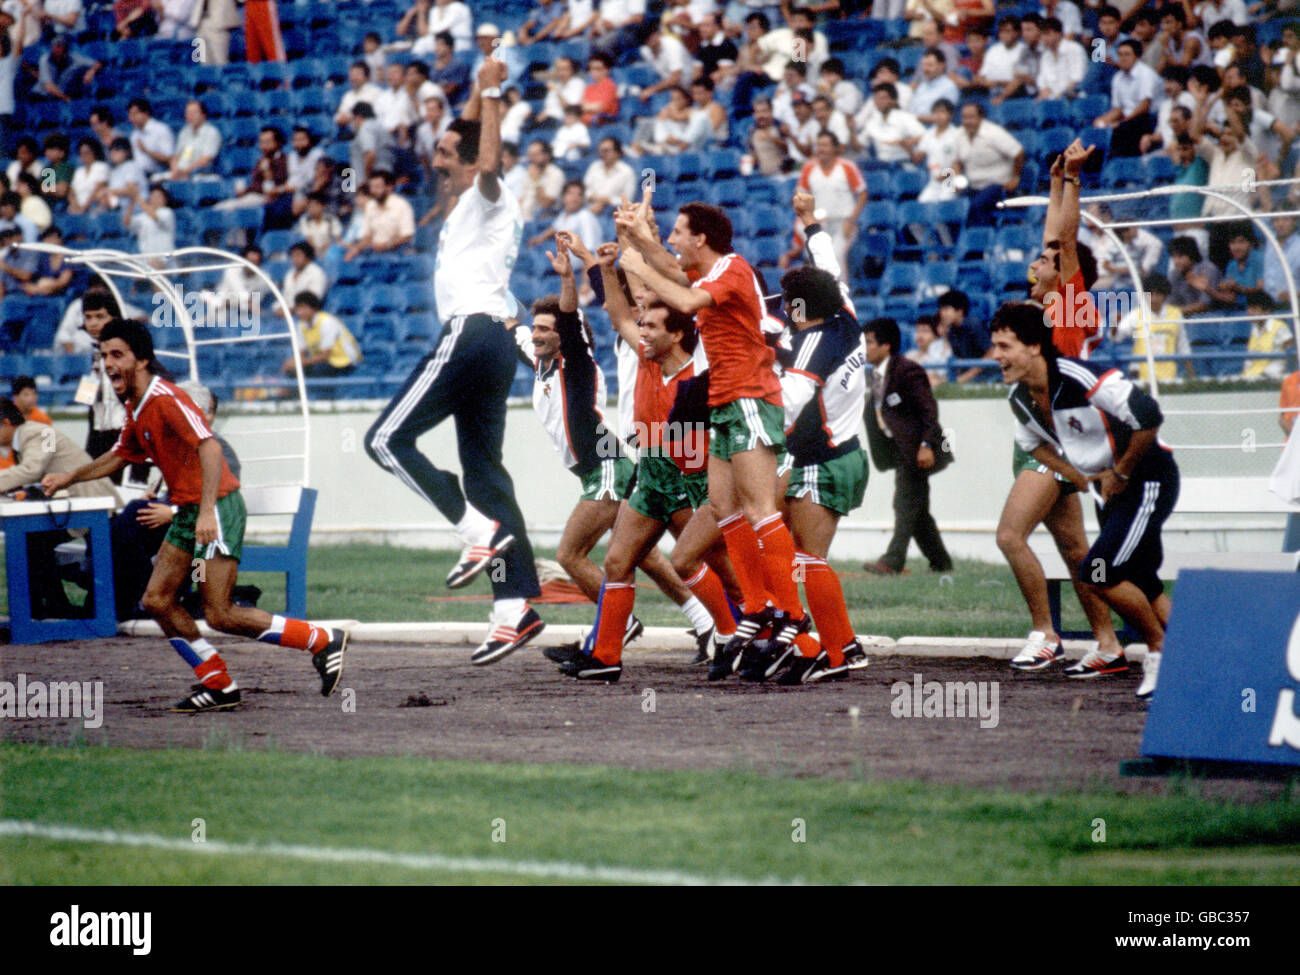 Calcio - Coppa del mondo Messico 86 - Gruppo F - Inghilterra / Portogallo. Giocatori e allenatori portoghesi festeggiano la loro vittoria nel 1-0 Foto Stock